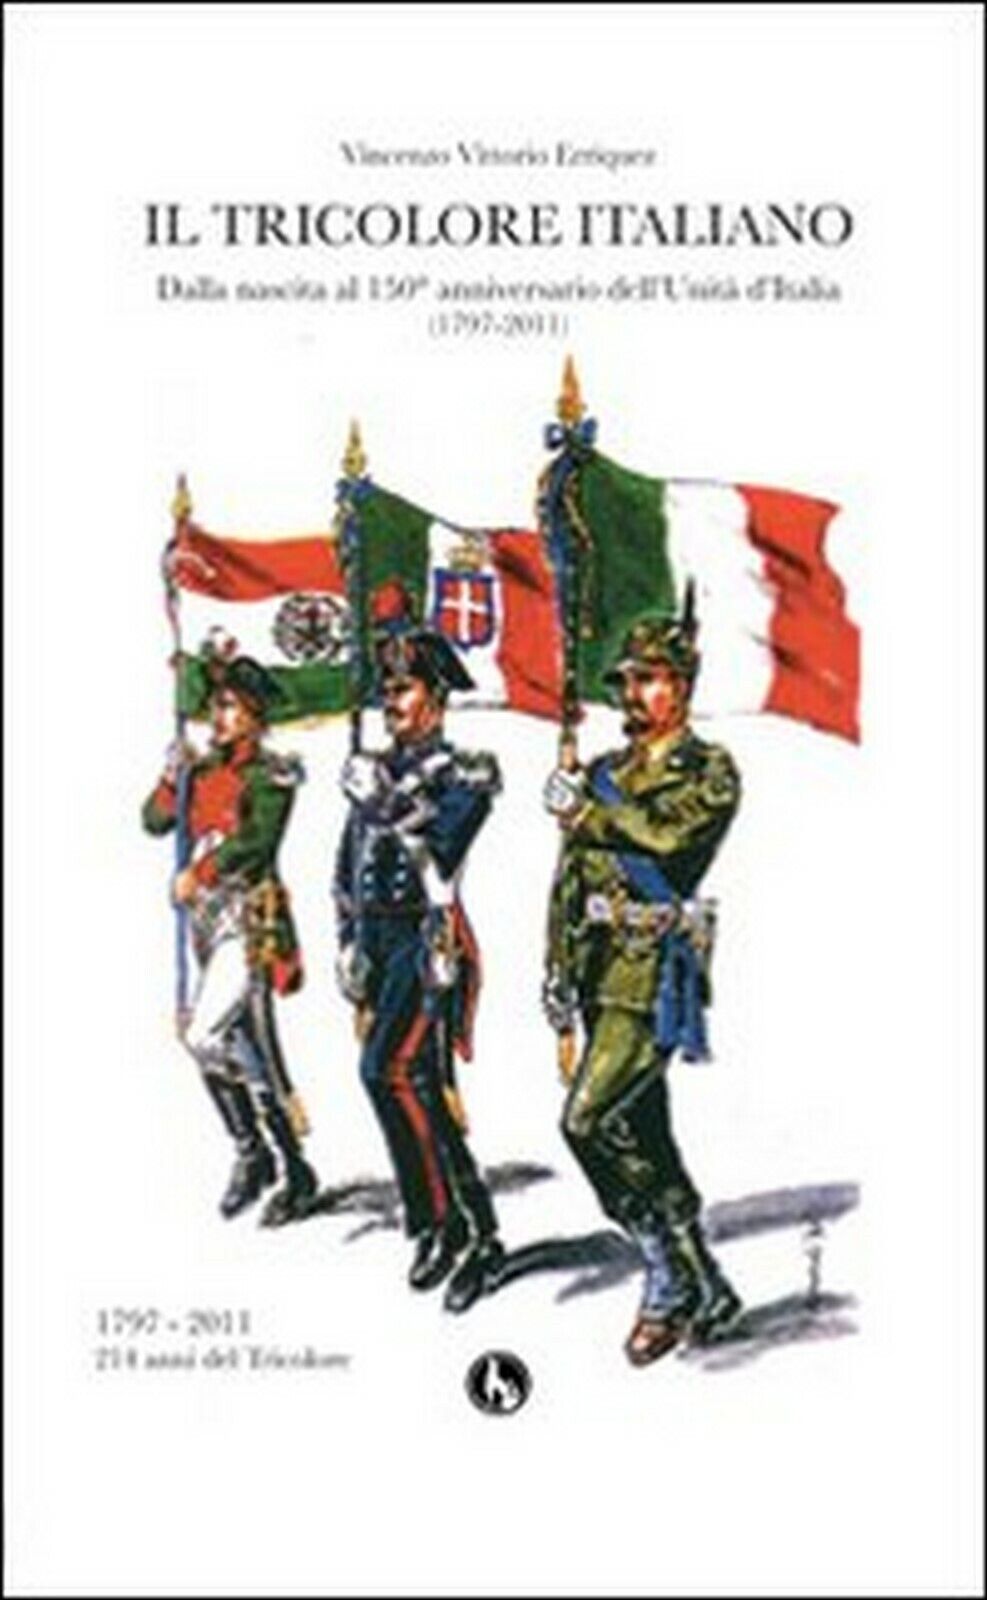 Il tricolore italiano. Dalla nascita al 150 anniversario delL'unit? d'Italia